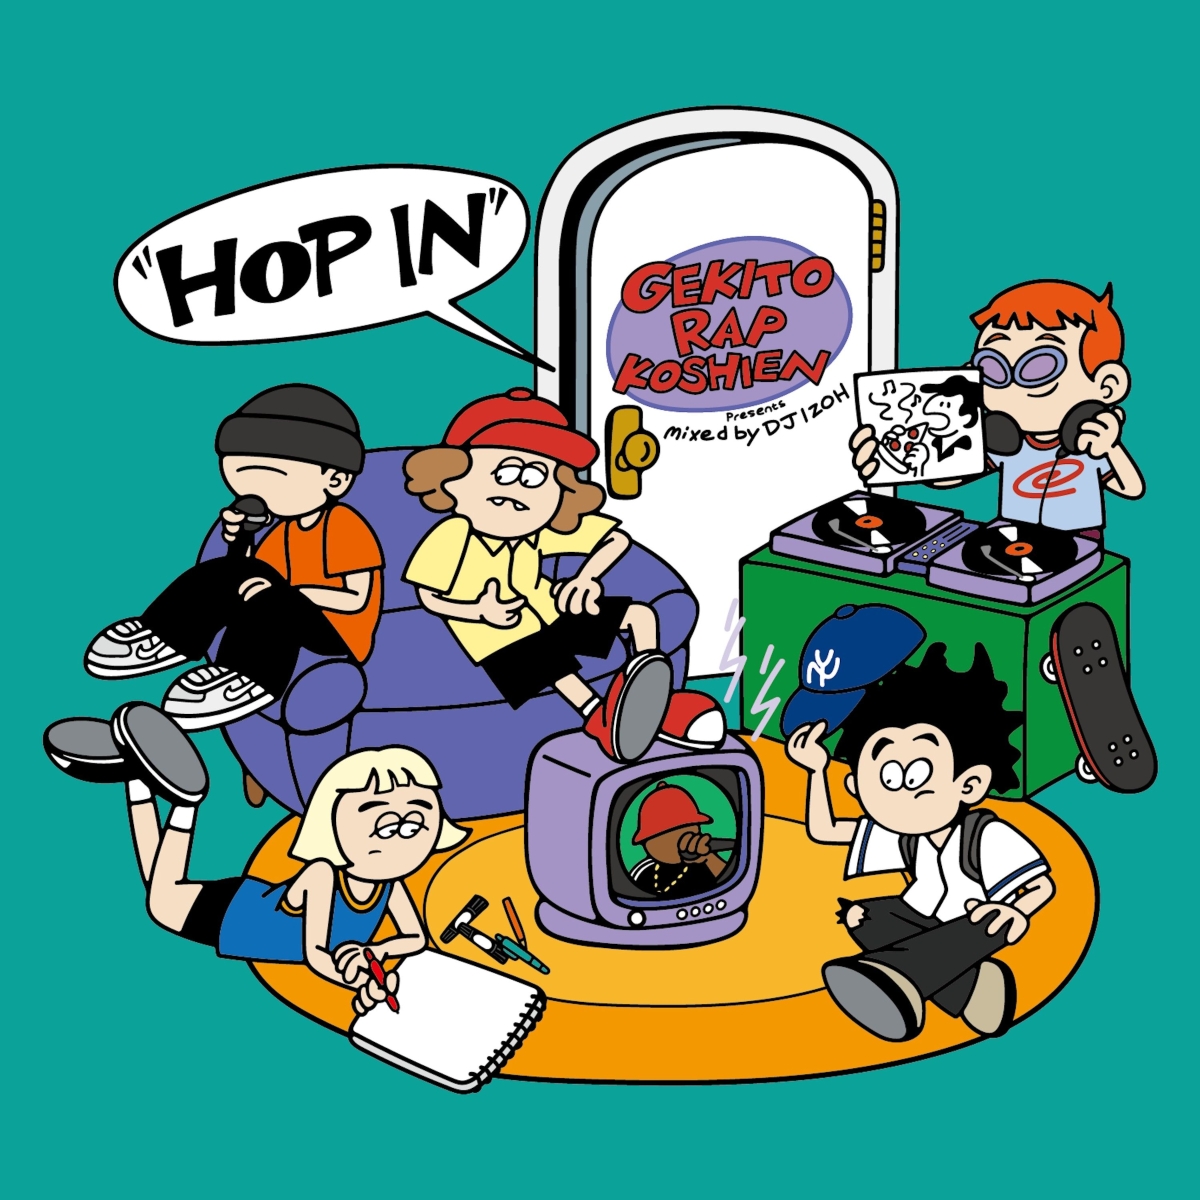 楽天ブックス: 激闘!ラップ甲子園 presents ”HOP IN” mixed by DJ IZOH